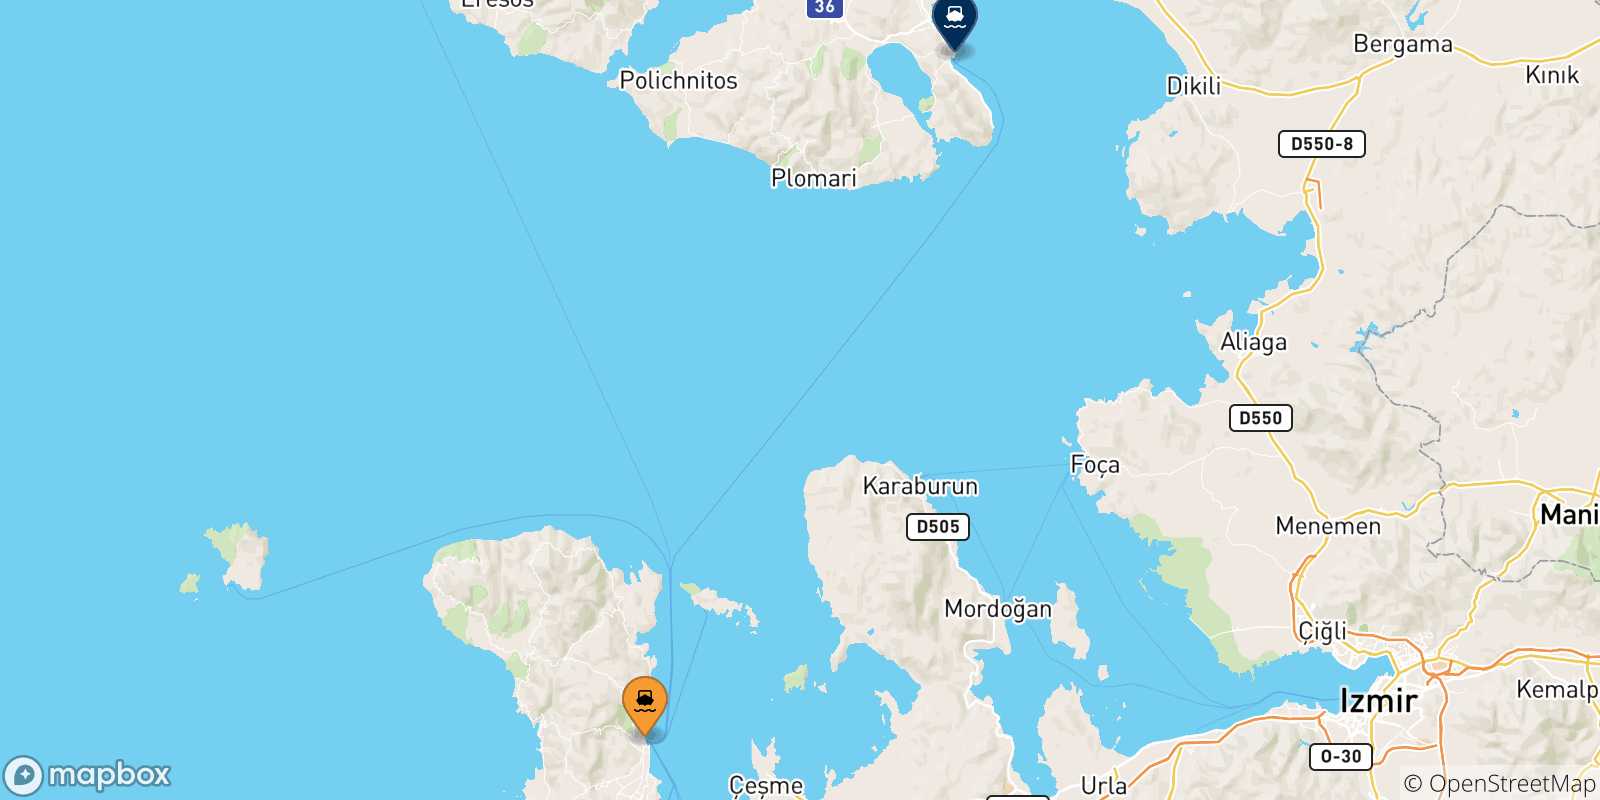 Mappa delle possibili rotte tra Mesta Chios e le Isole Egeo Nord Orientale